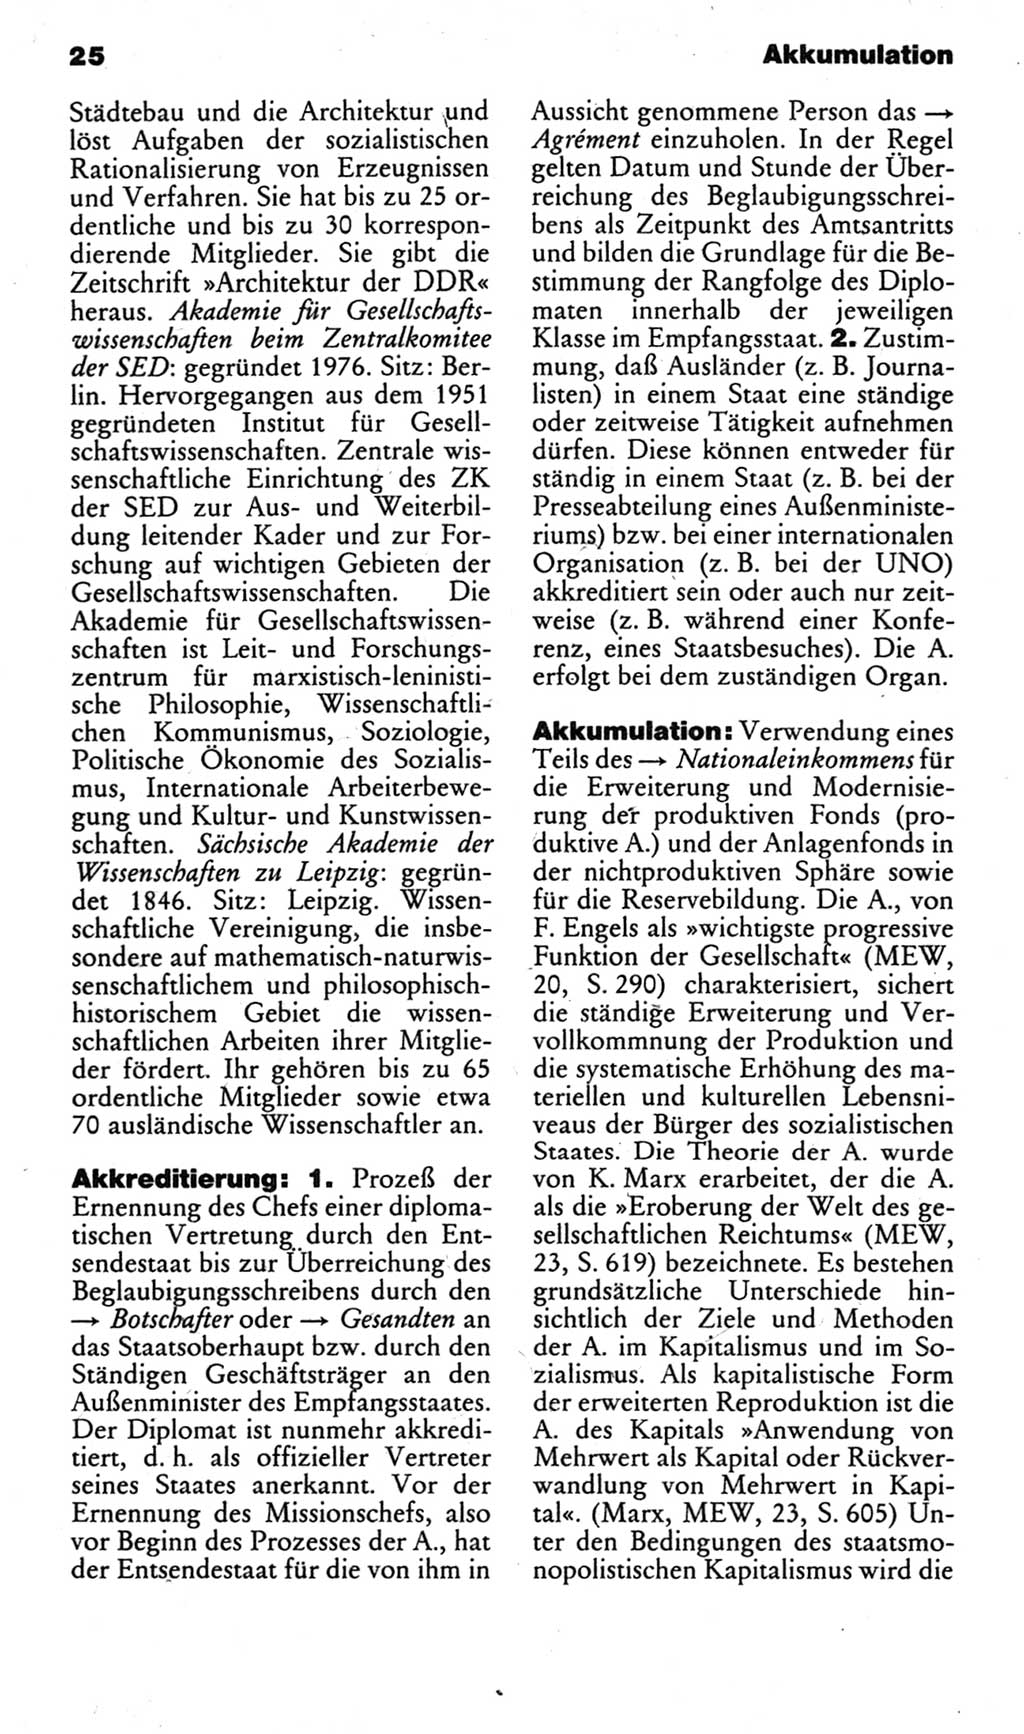 Kleines politisches Wörterbuch [Deutsche Demokratische Republik (DDR)] 1983, Seite 25 (Kl. pol. Wb. DDR 1983, S. 25)